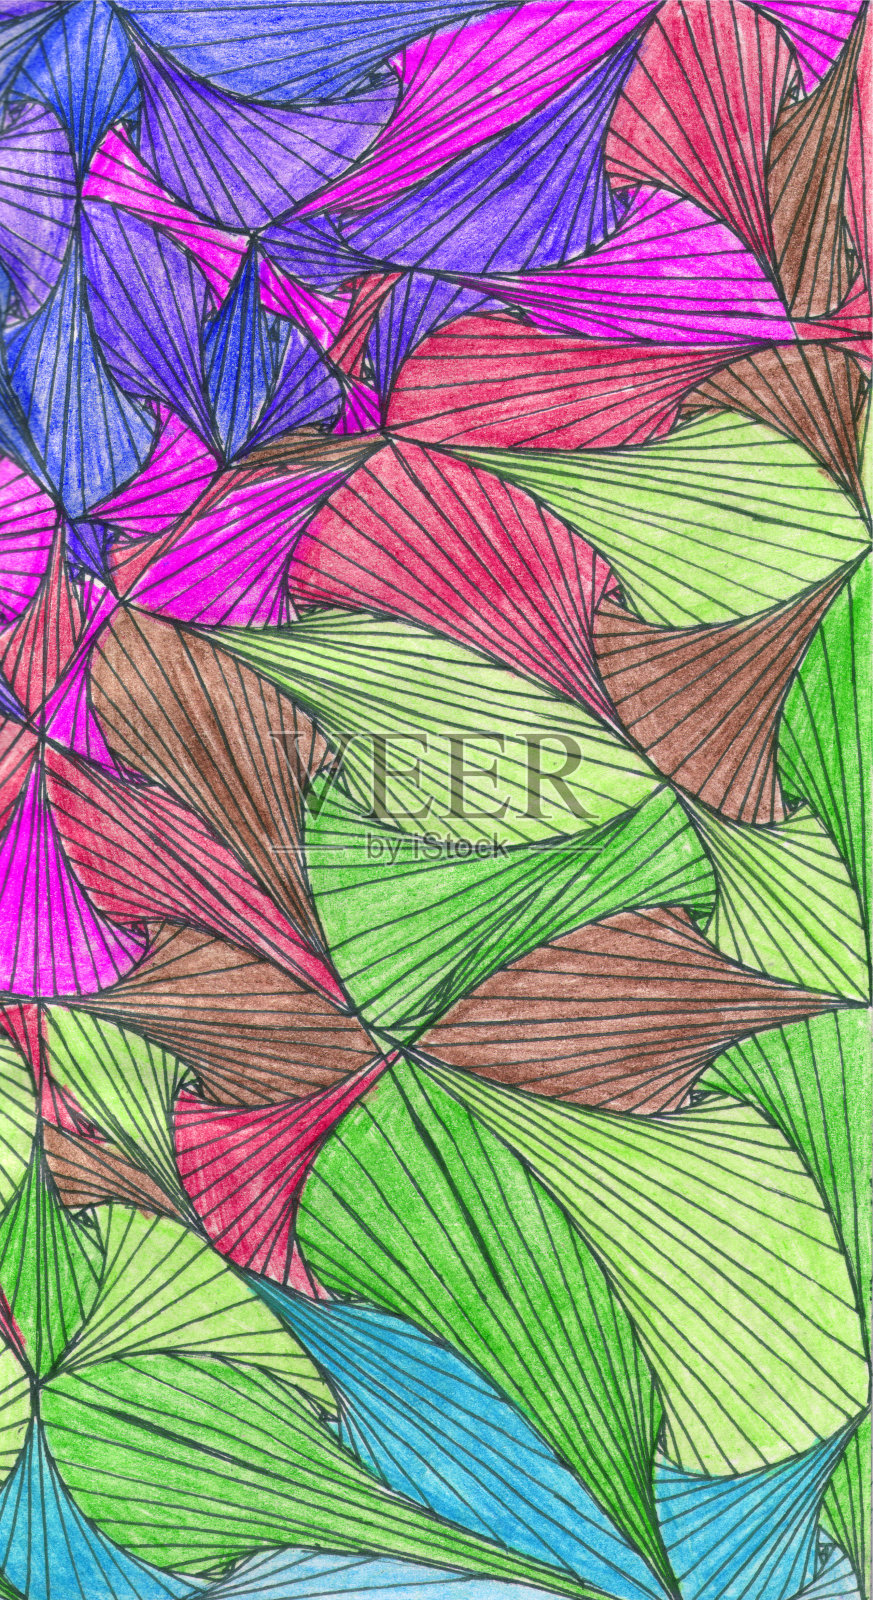 泽纳特以彩虹状的叶子或扇子的形式填充整个空间区域作为背景。插画图片素材